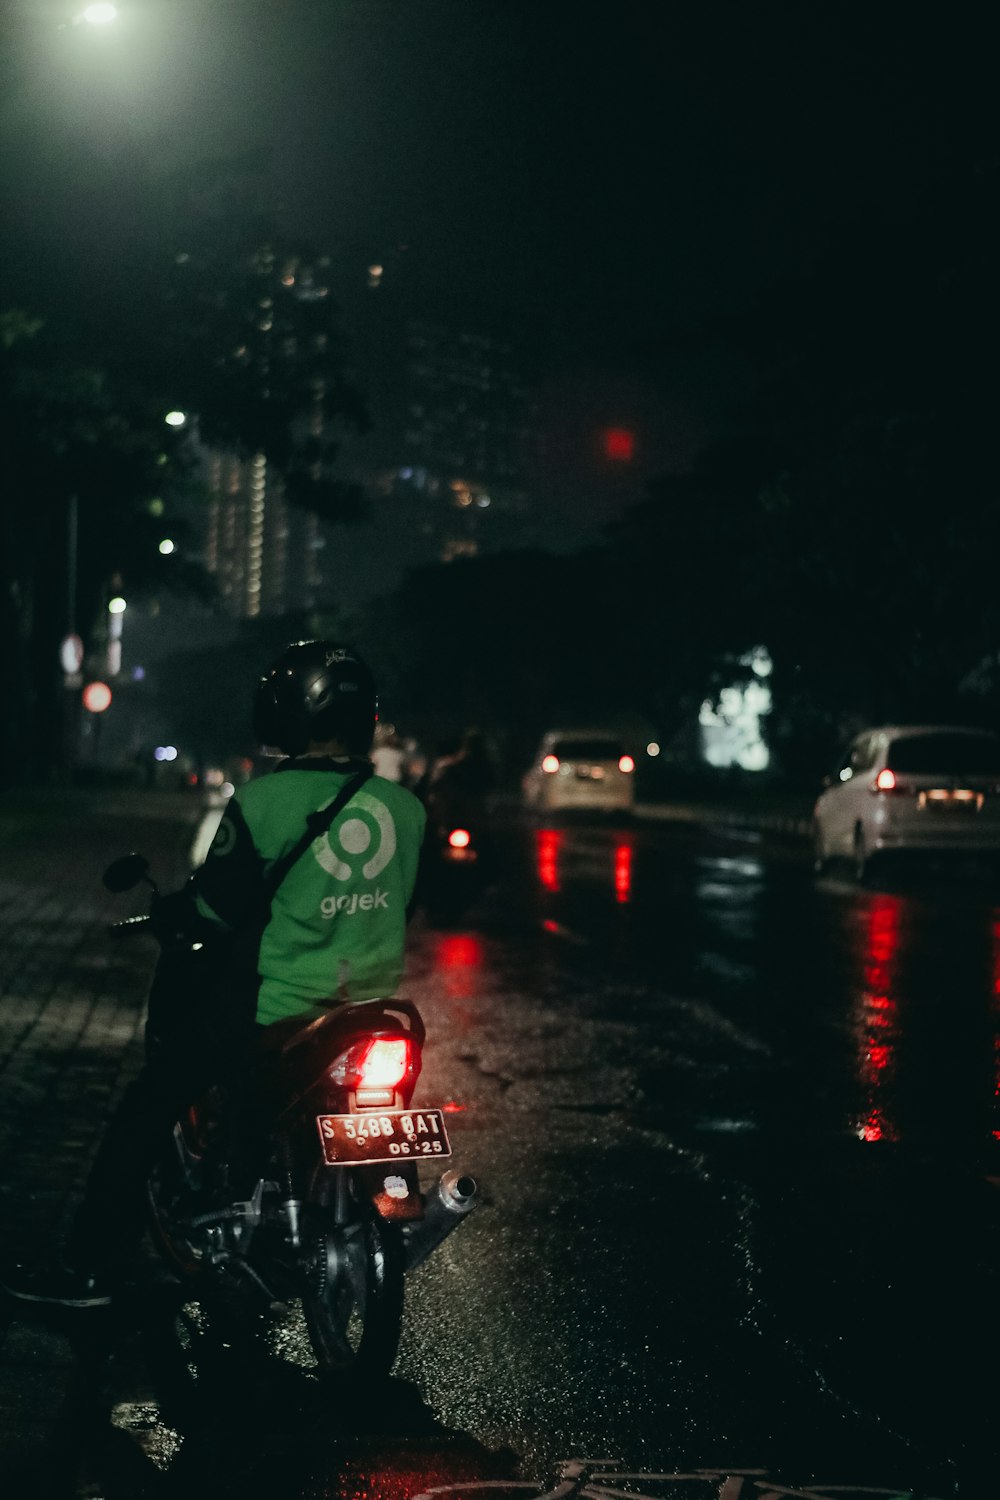 Un homme conduisant une moto dans une rue la nuit